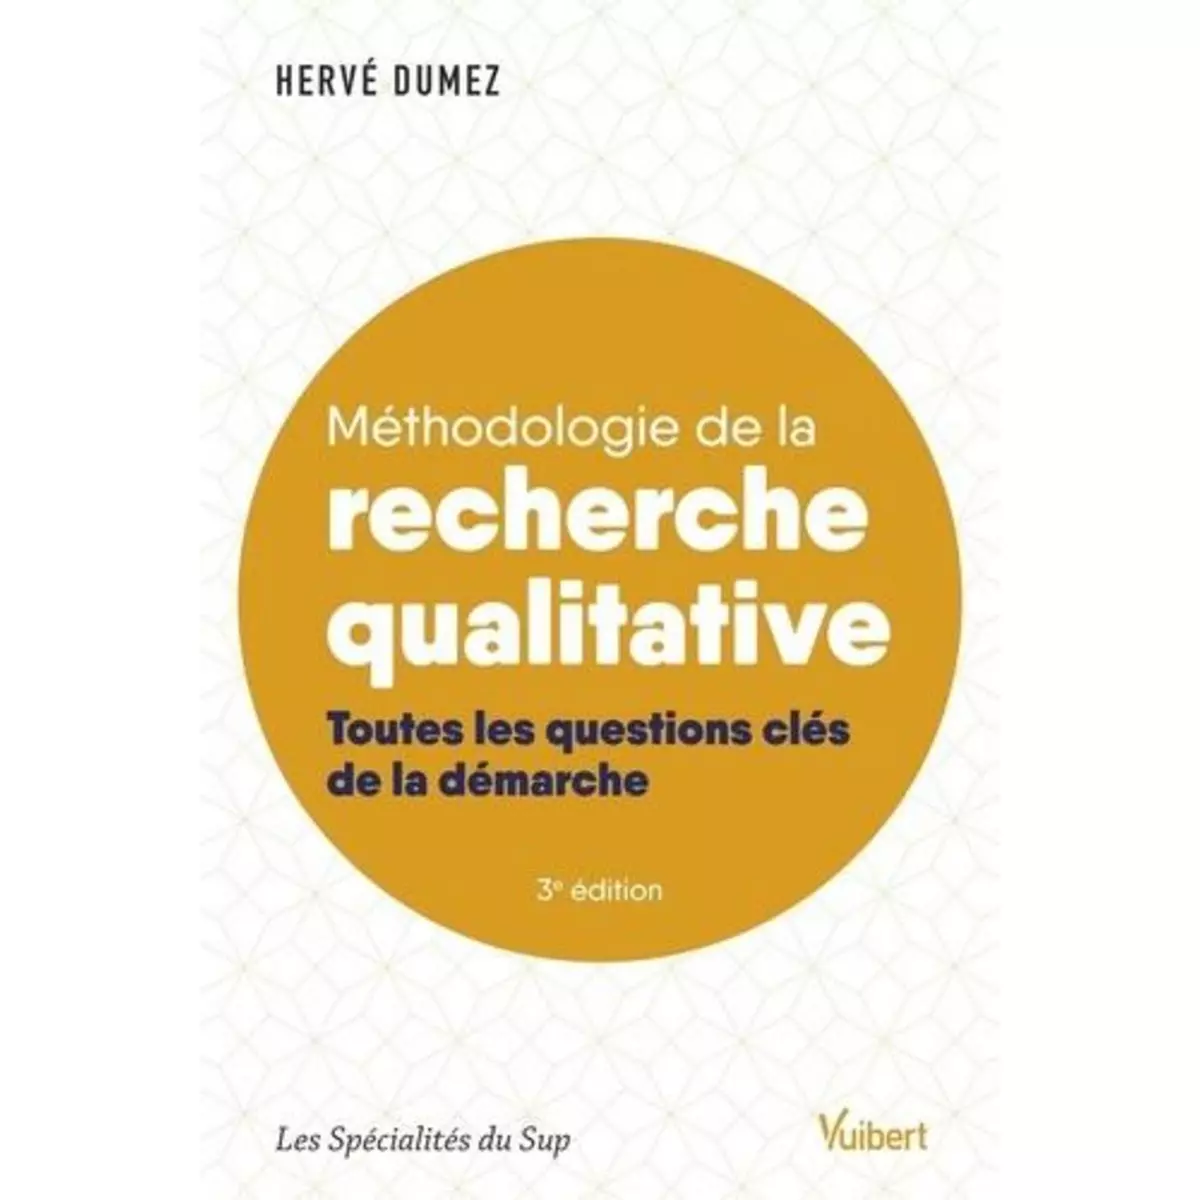  METHODOLOGIE DE LA RECHERCHE QUALITATIVE. TOUTES LES QUESTIONS CLES DE LA DEMARCHE, 3E EDITION, Dumez Hervé